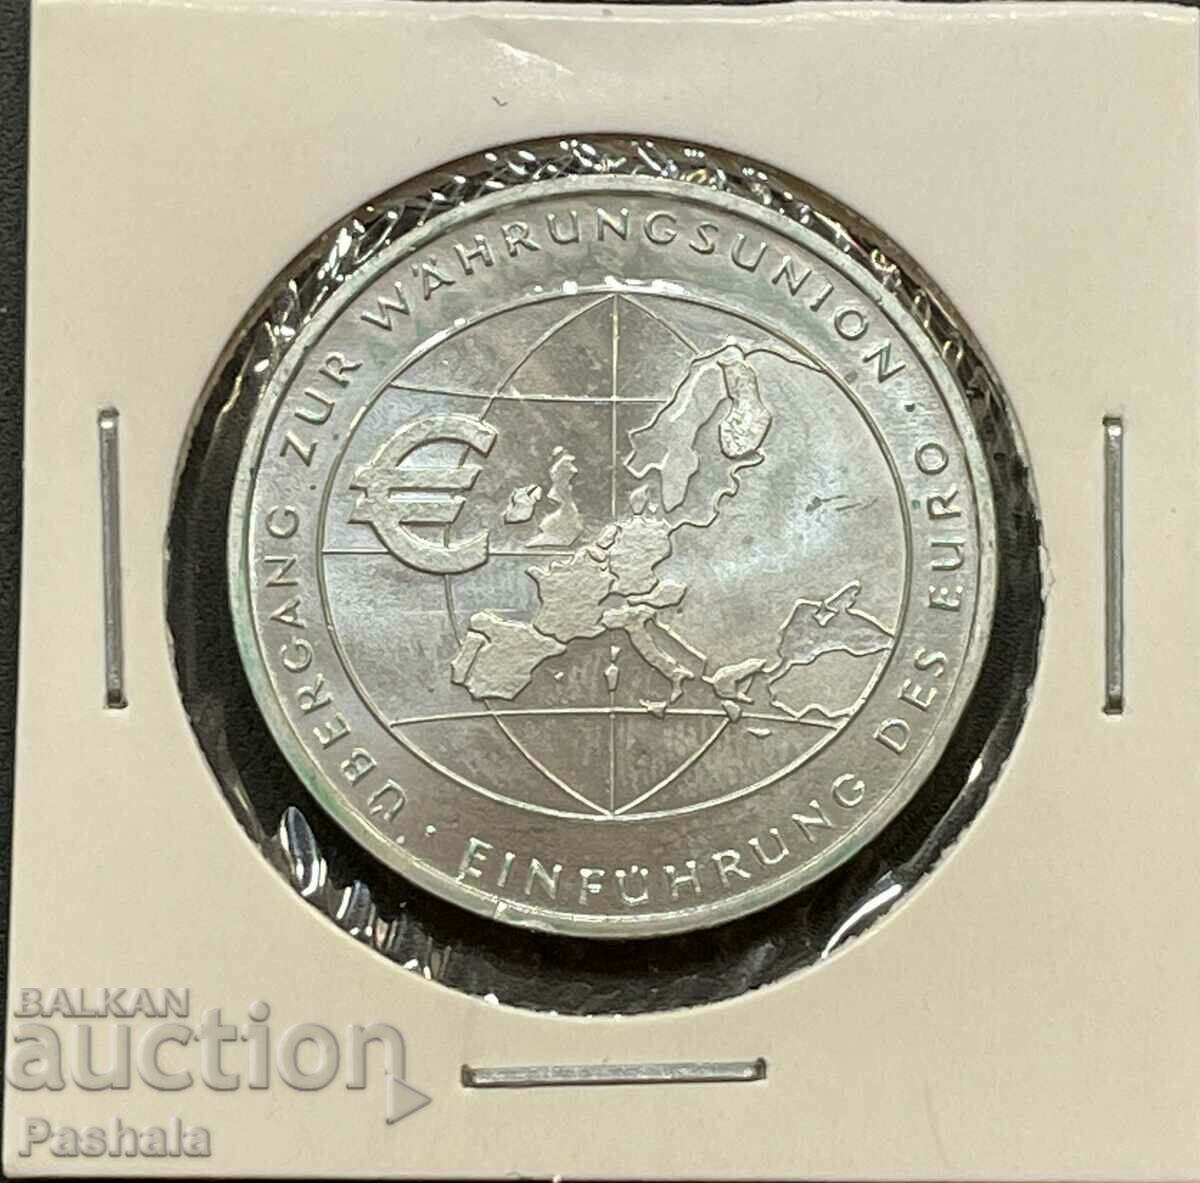 Germany 10 euro 2002